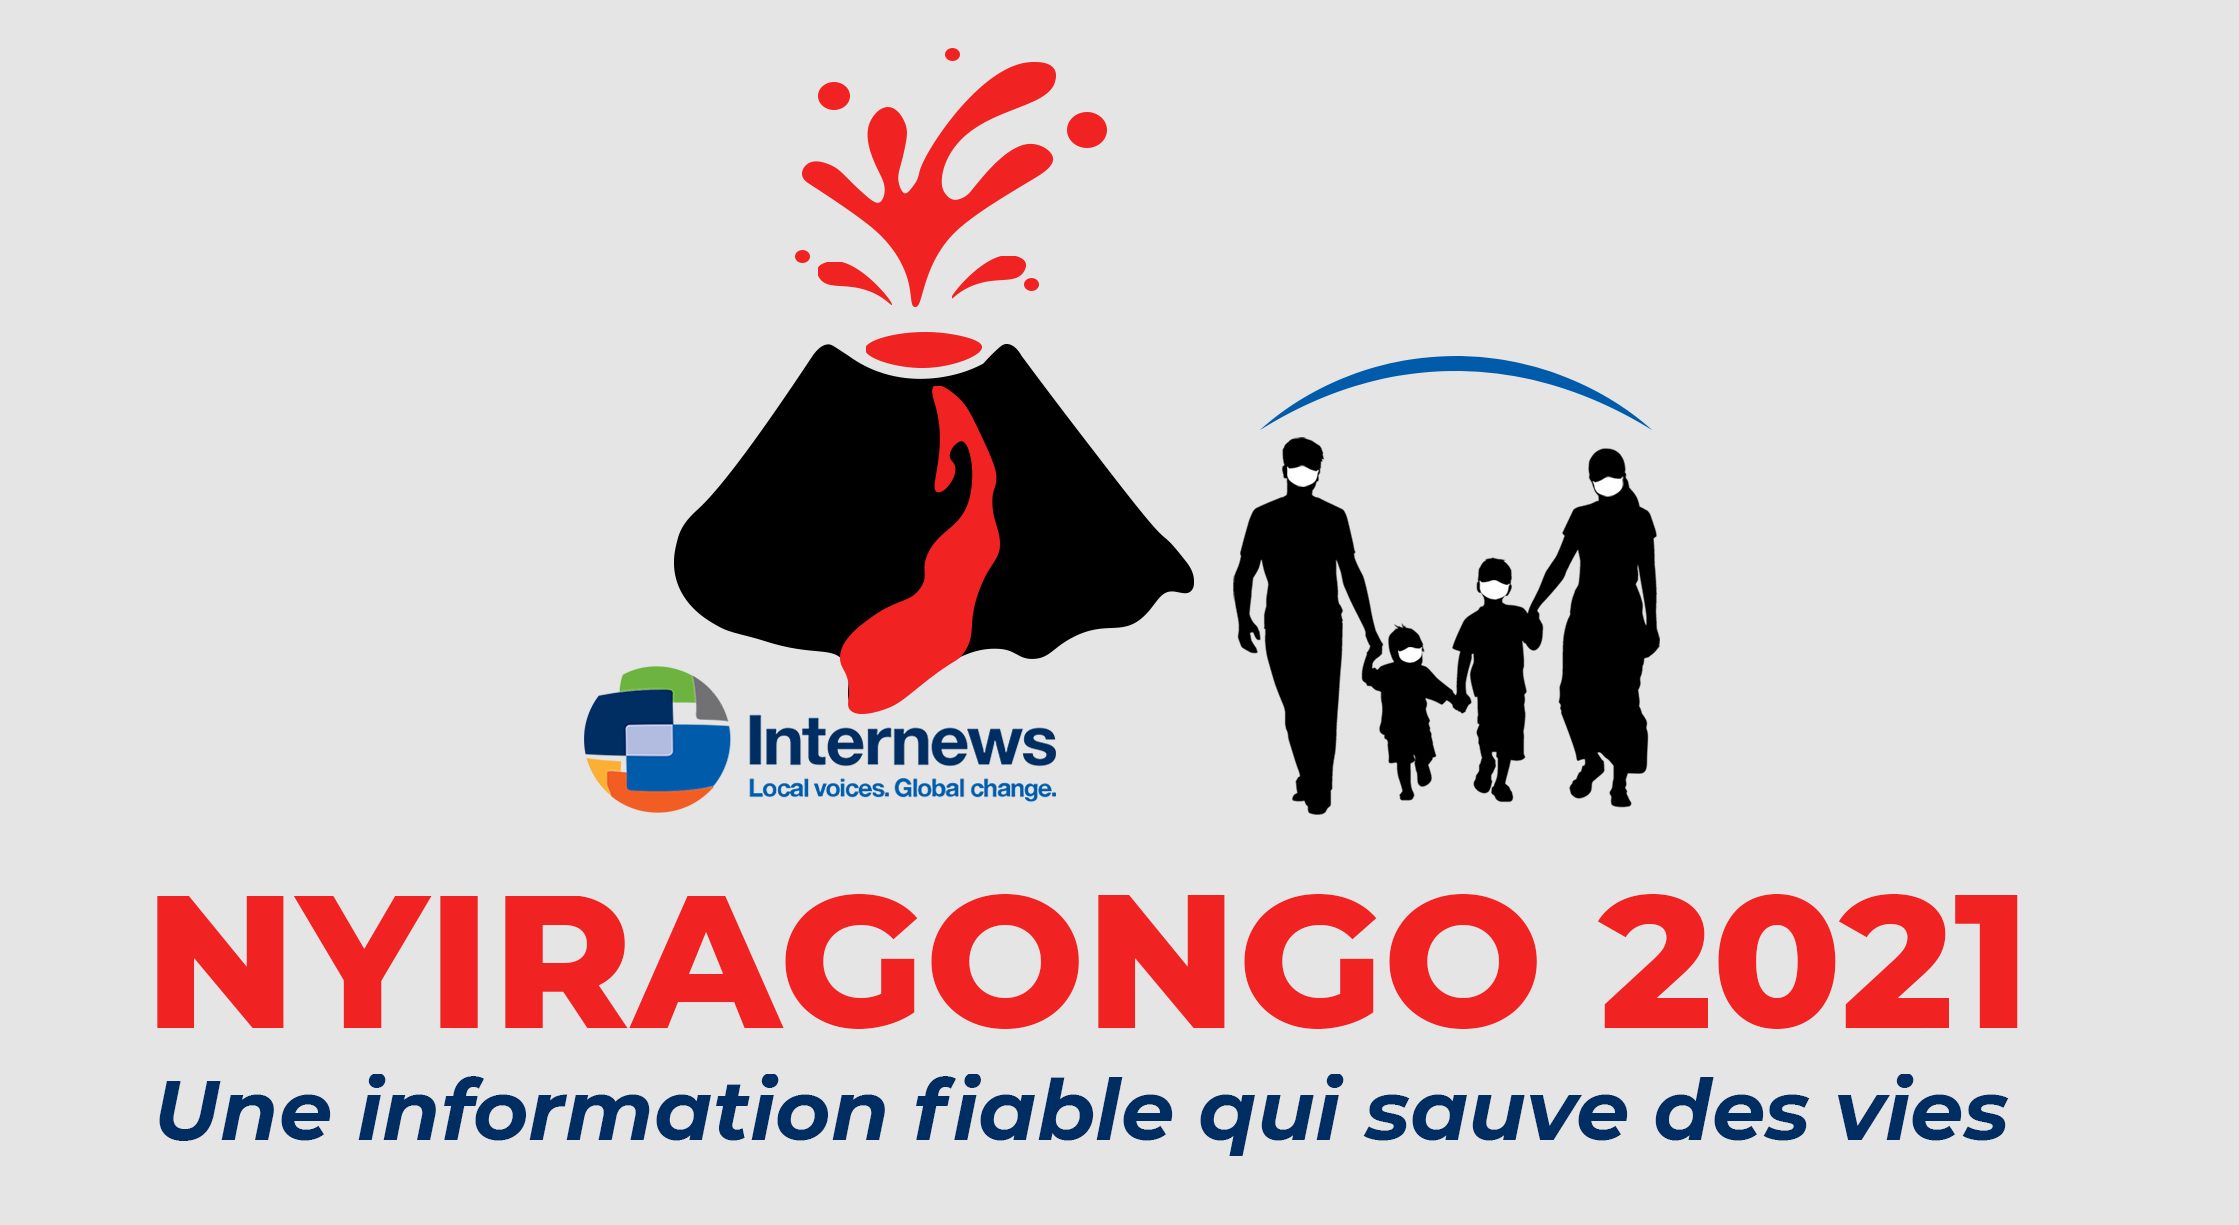 You are currently viewing A travers sa rédaction « Afia Amani Grands lacs », Internews se positionne face à l’éruption volcanique 2021 du Nyiragongo à Goma et ses environs